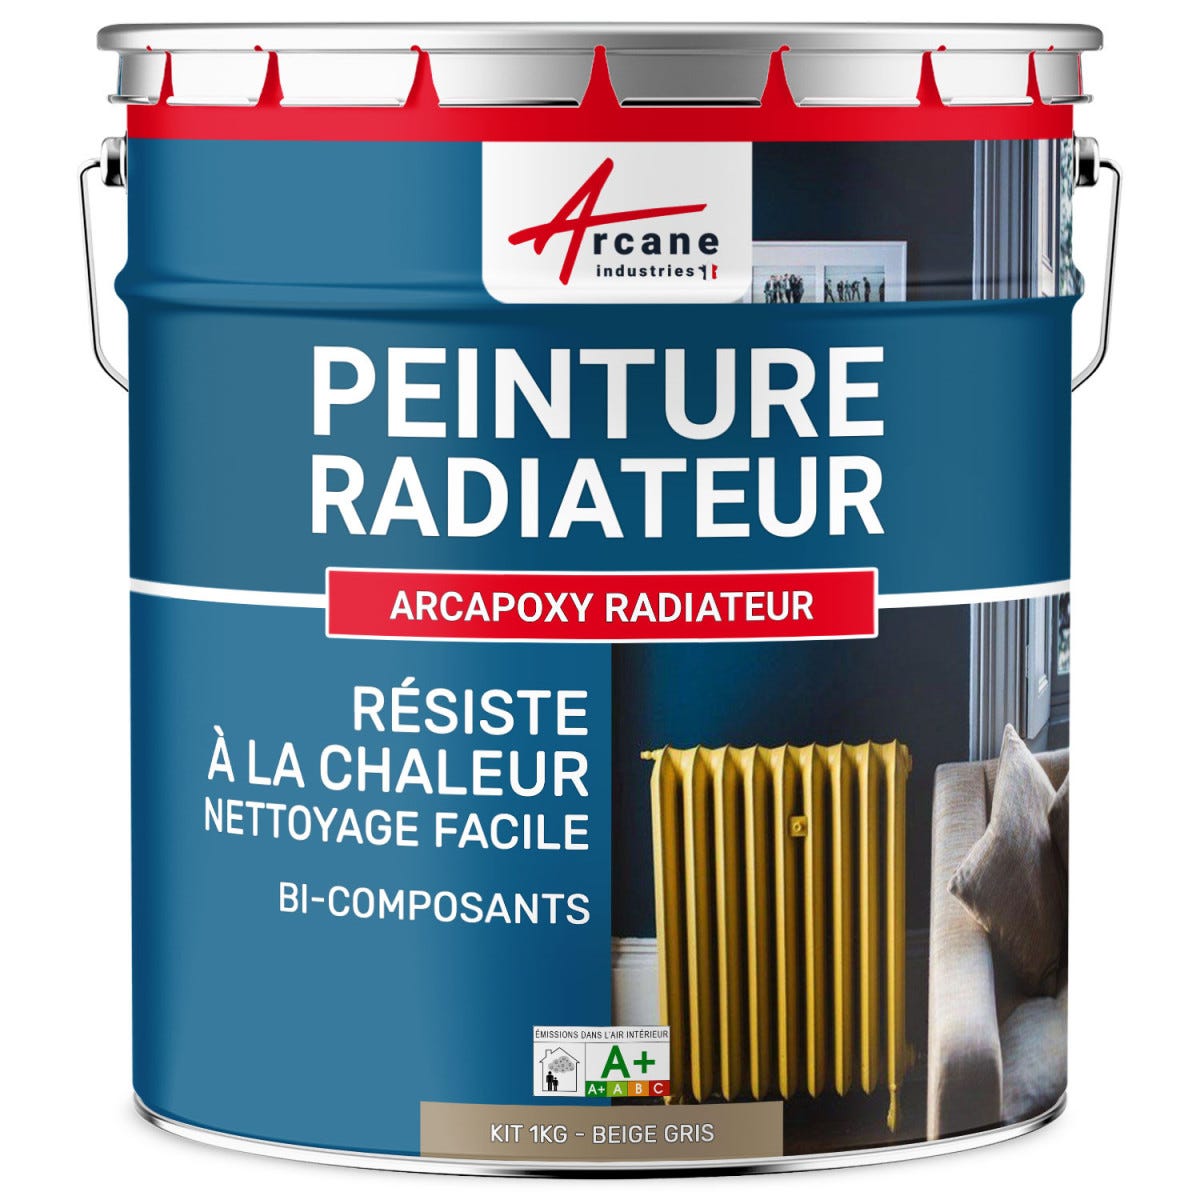 Peinture Radiateur fonte acier alu - PEINTURE RADIATEUR - 1 kg (jusqu'à 5 m² en 2 couches) - Beige Gris - RAL 1019 - ARCANE INDUSTRIES 5